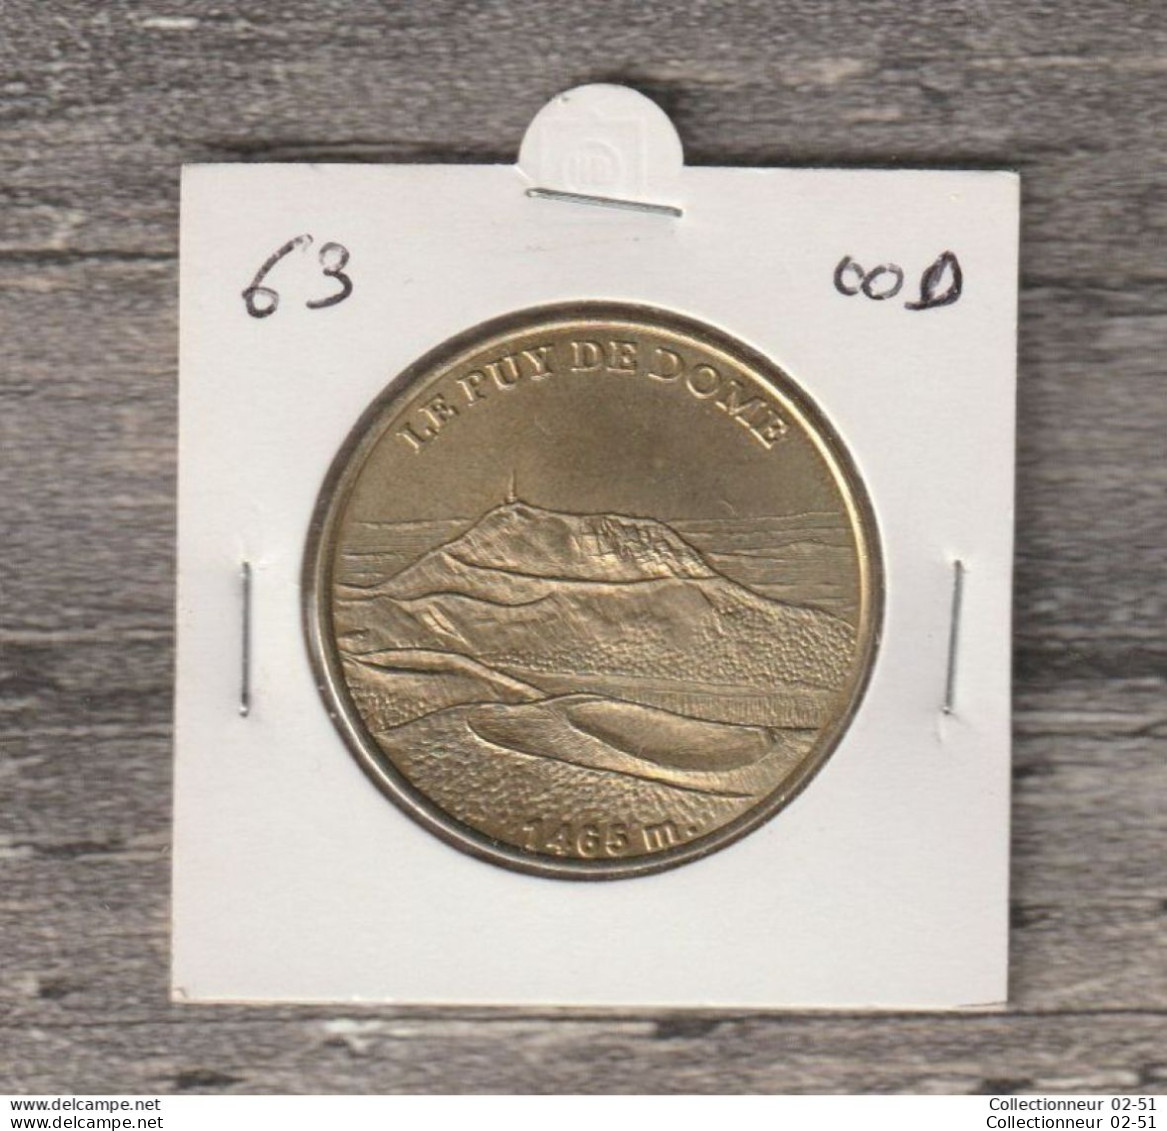 Monnaie De Paris : Le Puy De Dome - 2000 - 2000